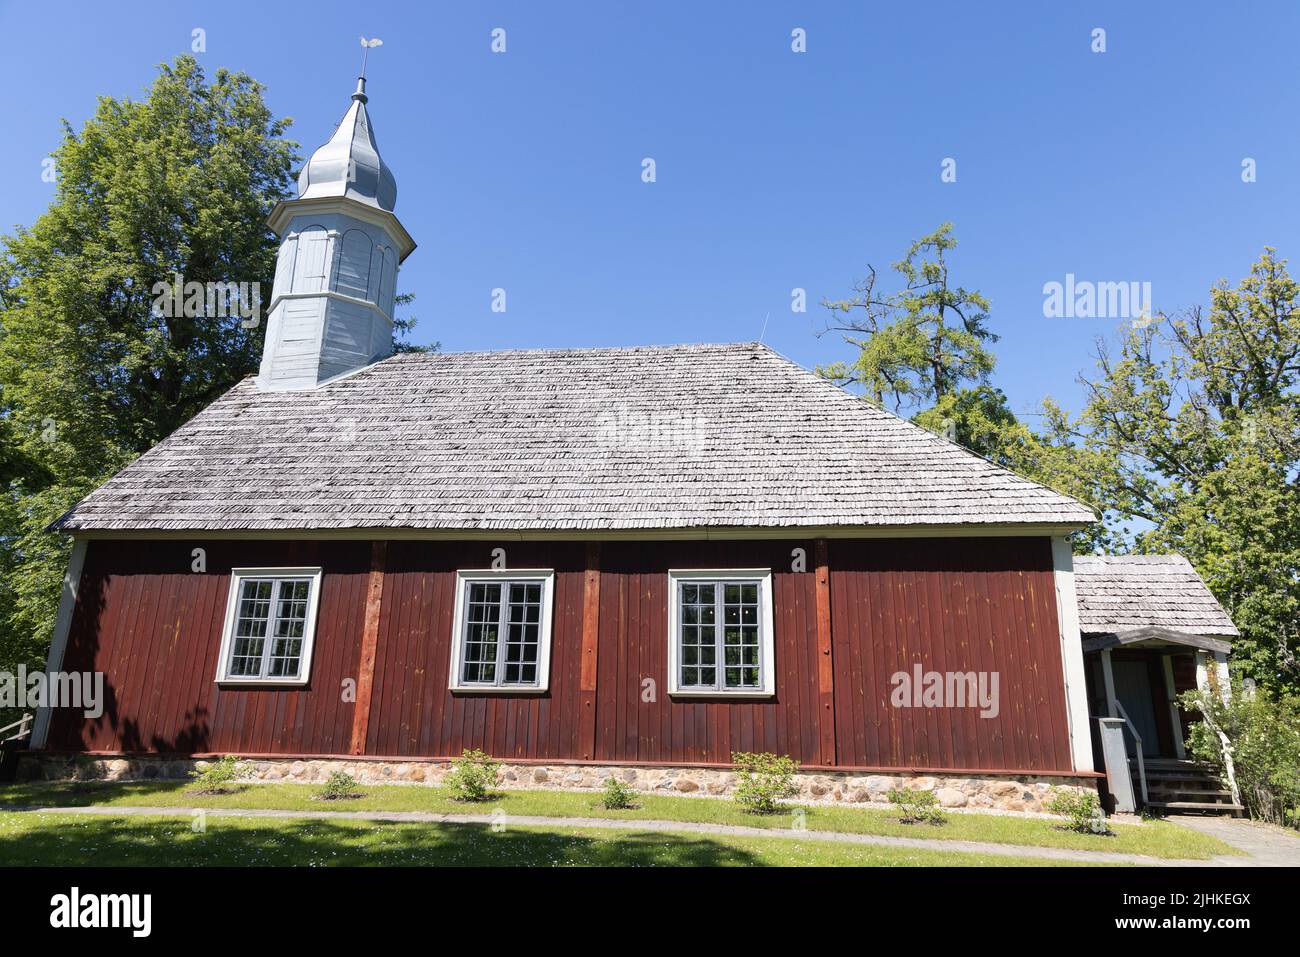 Chiesa Turaida, chiesa luterana del 18th secolo costruita nel 1750, vista esterna di una delle chiese di legno più antiche in Lettonia; Sigulda, Lettonia Europa Foto Stock